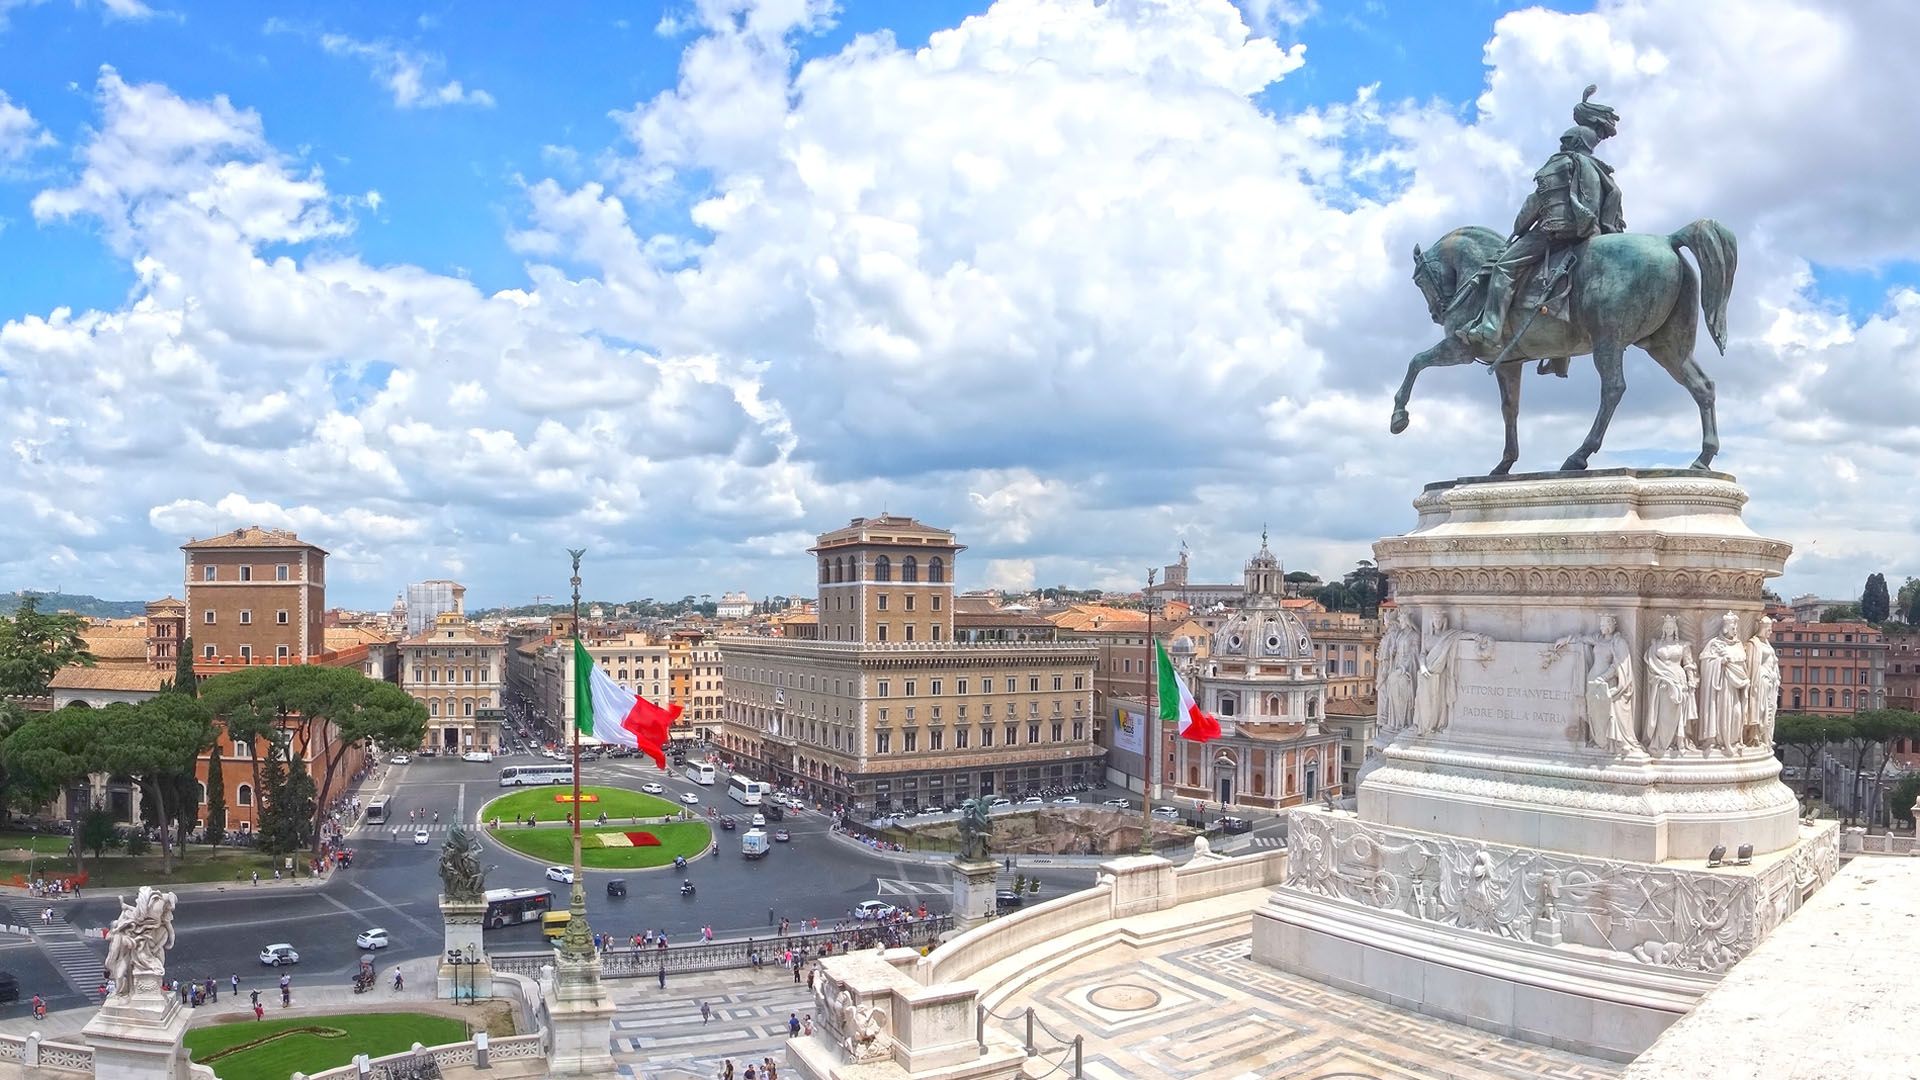 Piazza Venezia in Rome